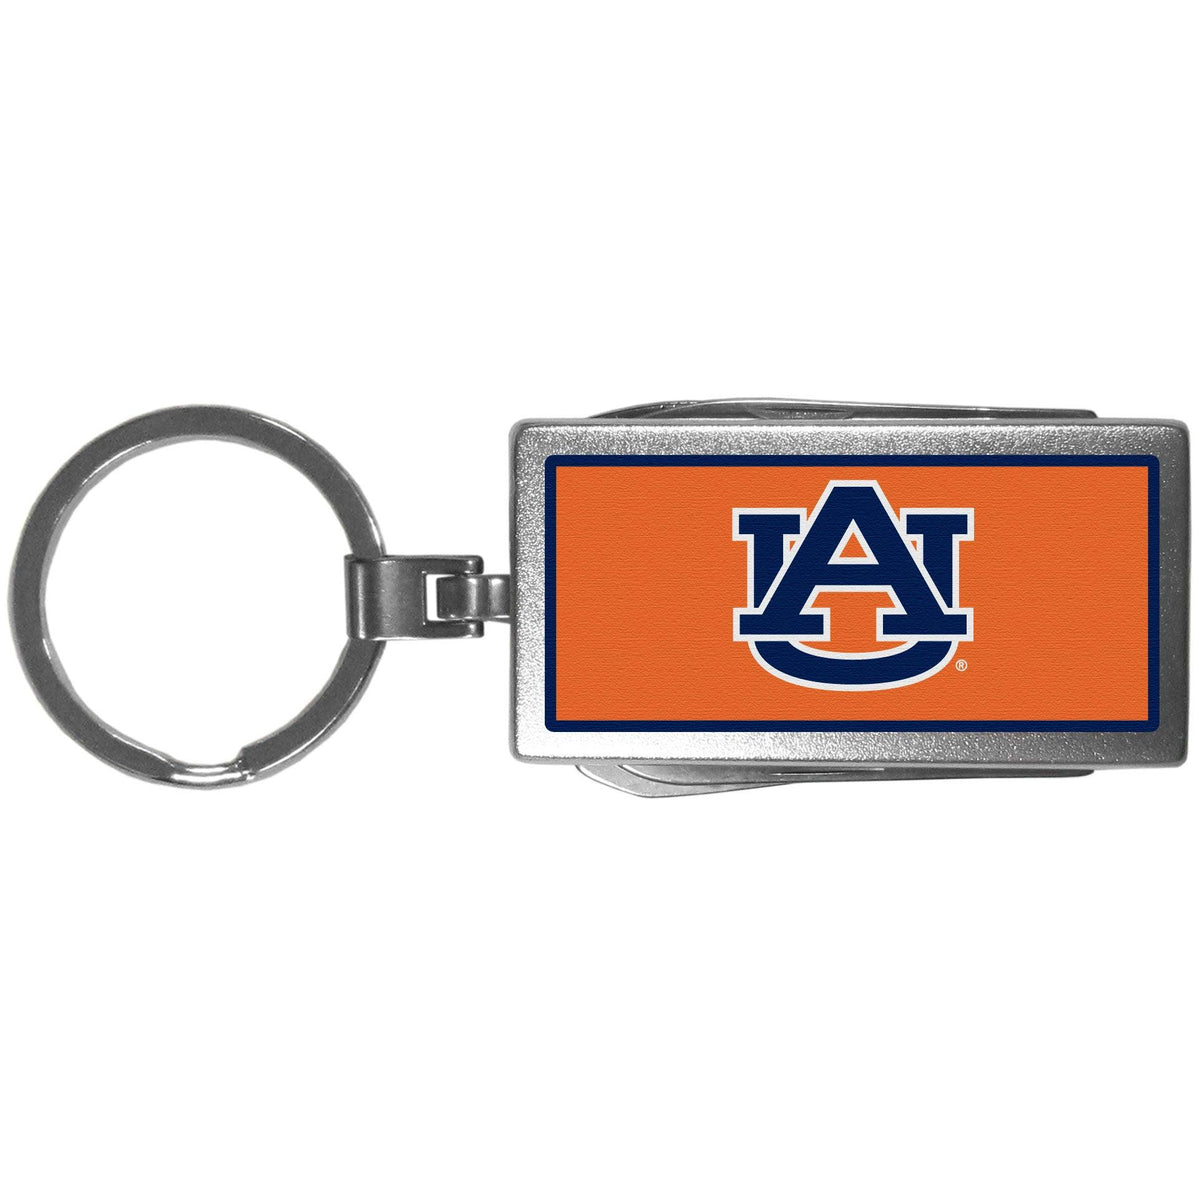 Auburn Tigers Multi-tool Key Chain, Logo - Flyclothing LLC